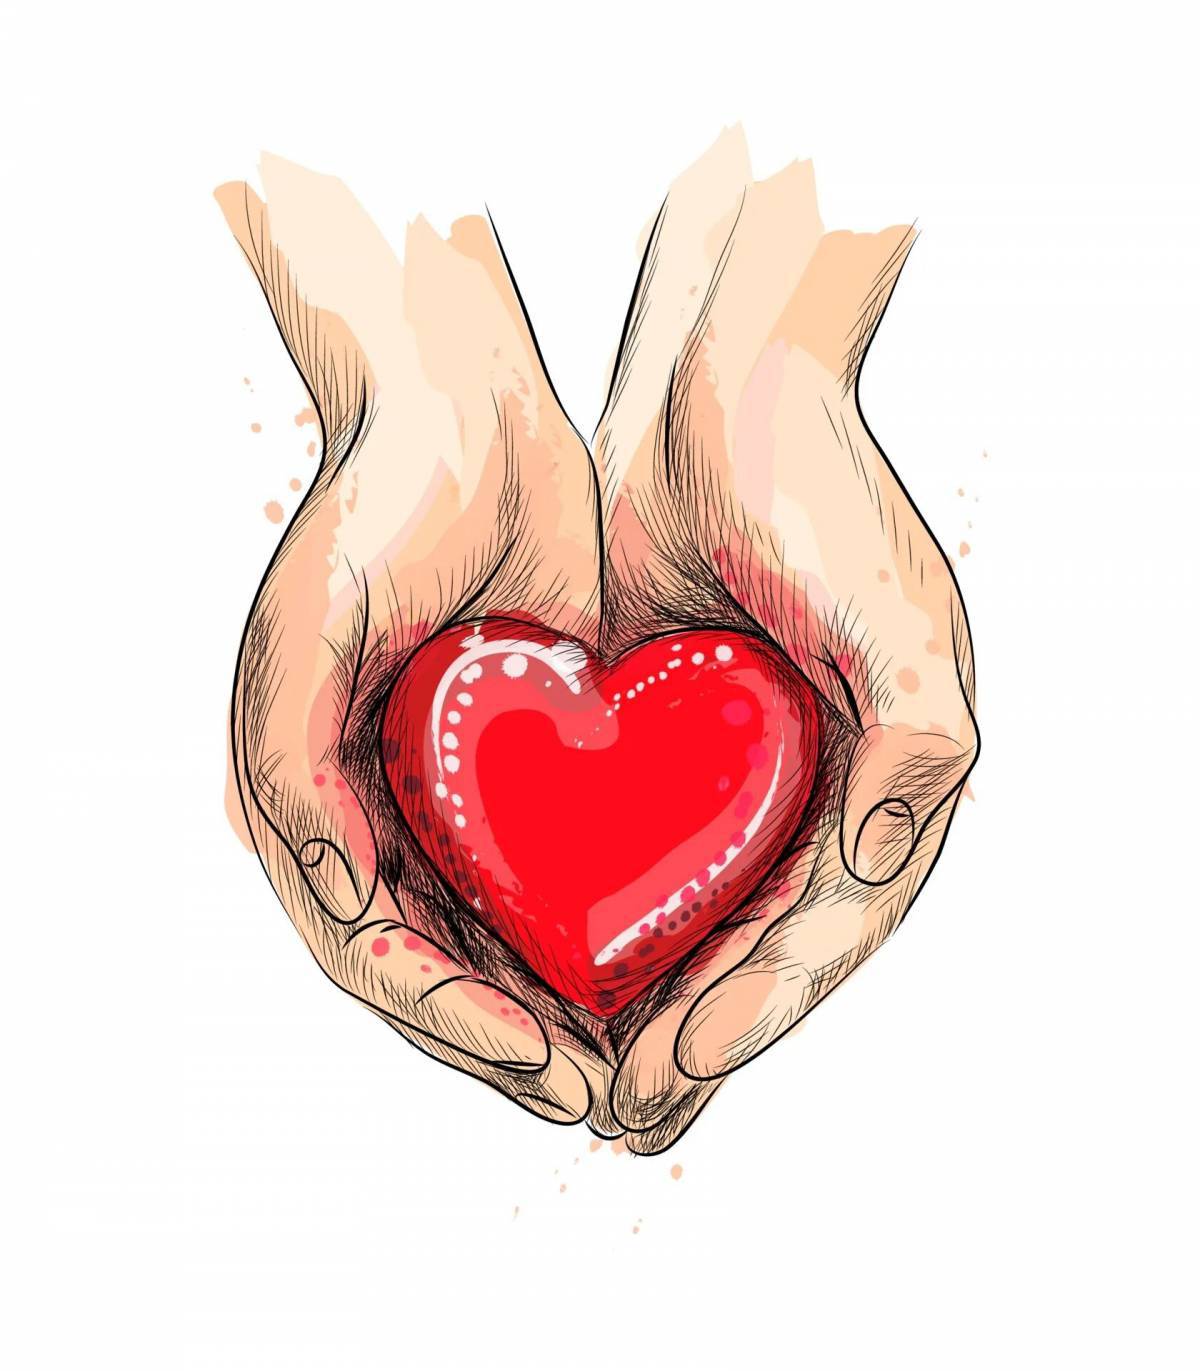 Сердечки - красивые анимационные картинки, рисунки сердец